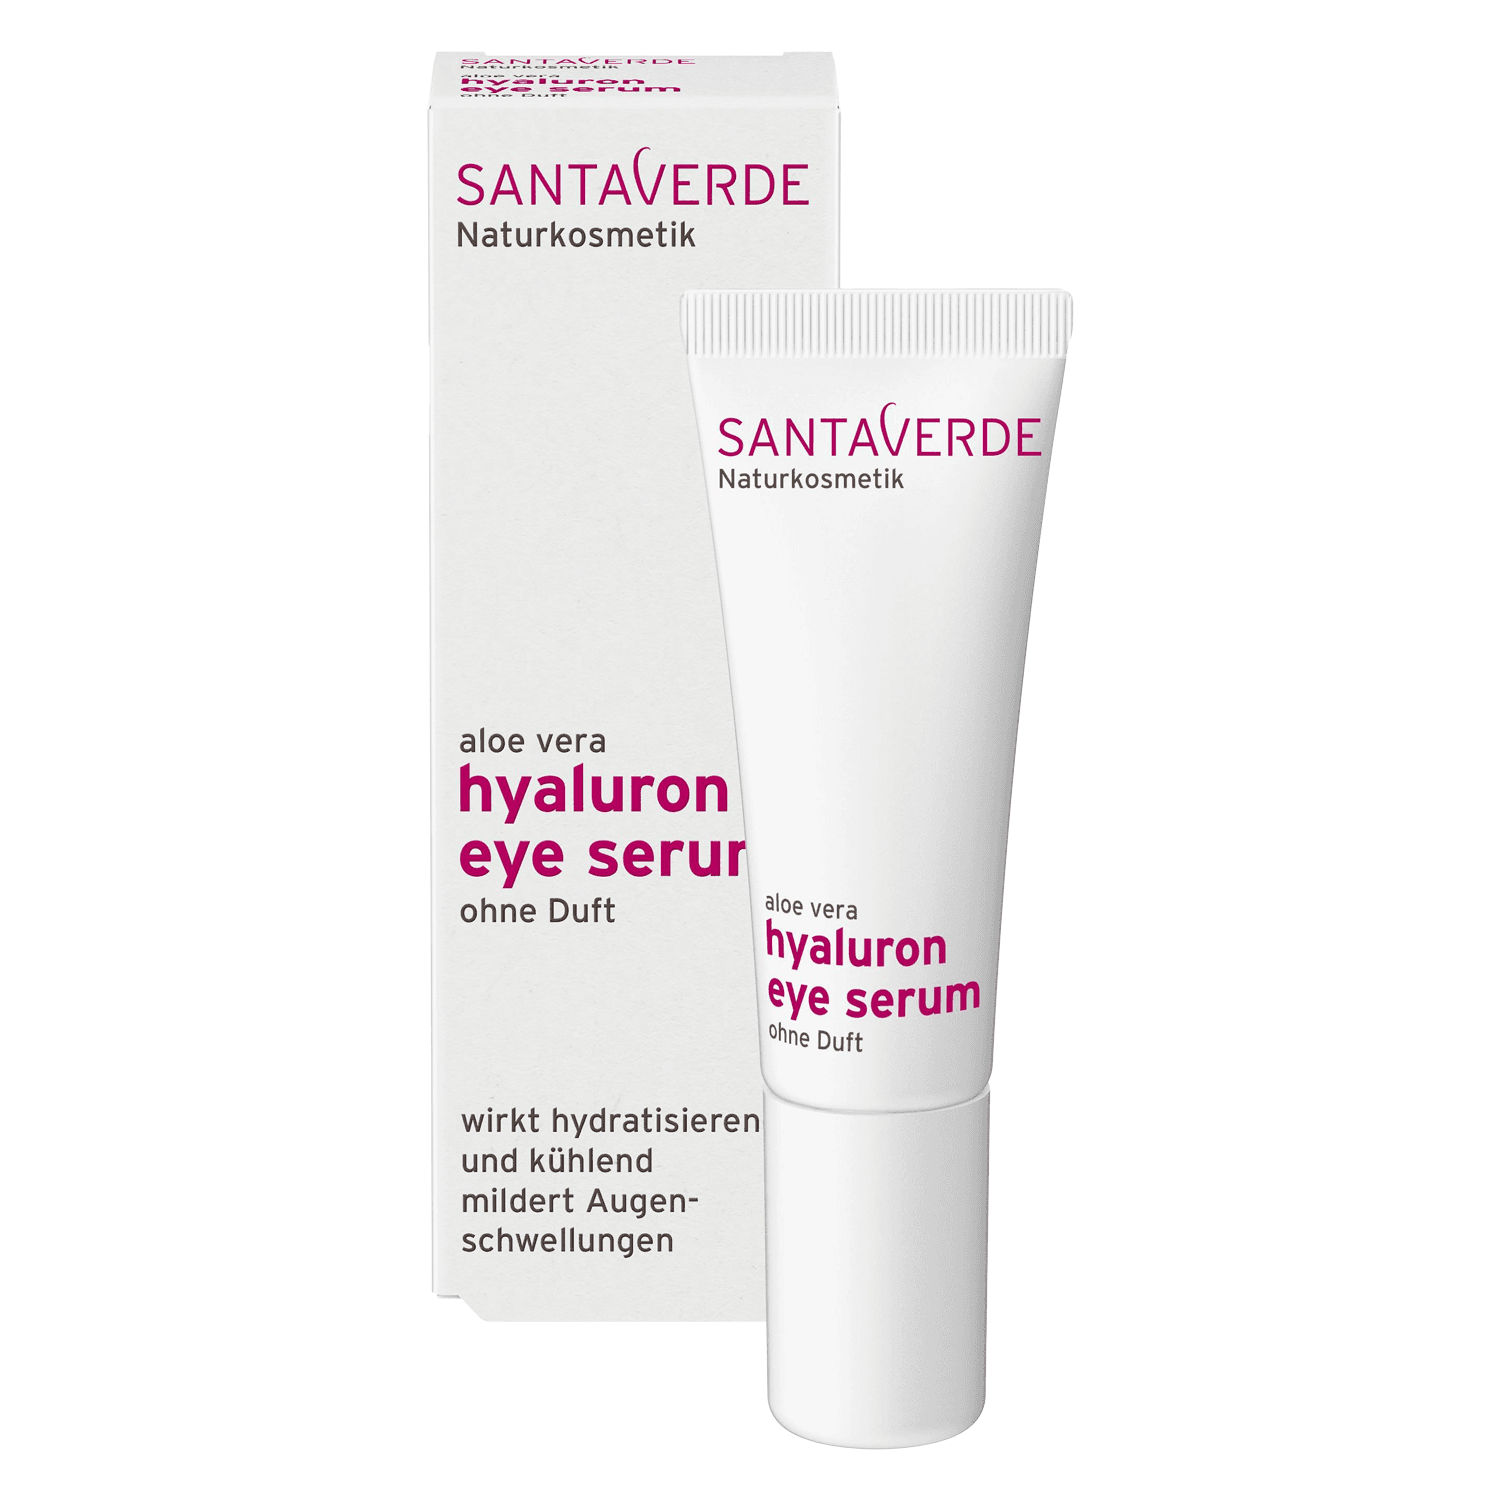 SANTAVERDE - aloe vera hyaluron eye serum ohne Duft